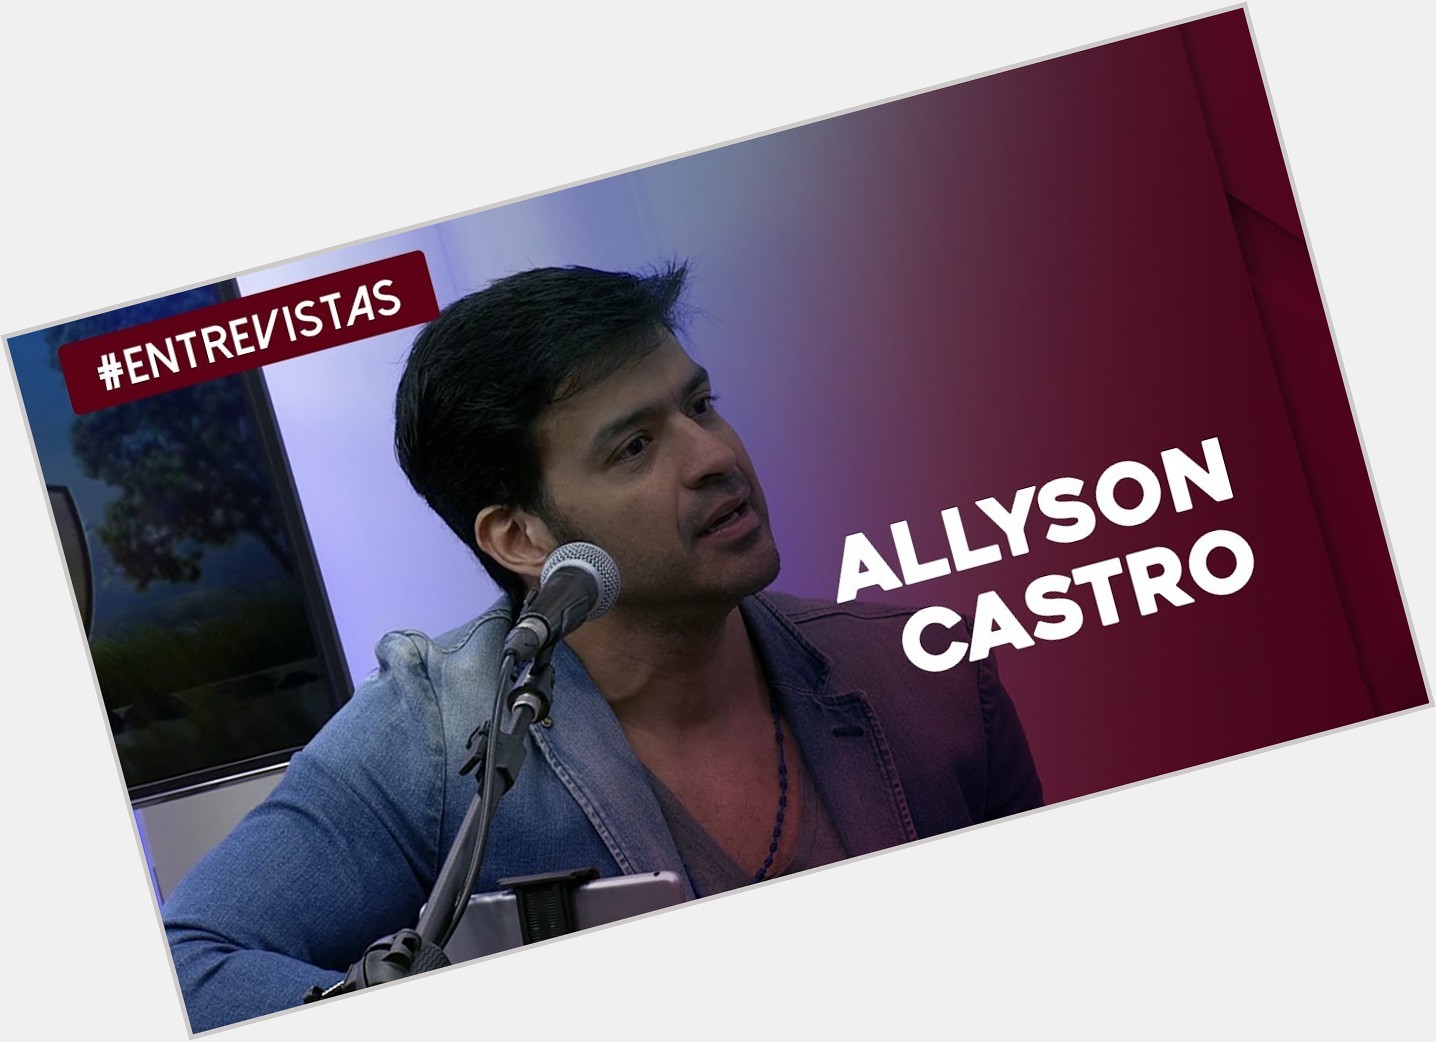 <a href="/hot-men/allyson-castro/where-dating-news-photos">Allyson Castro</a>  